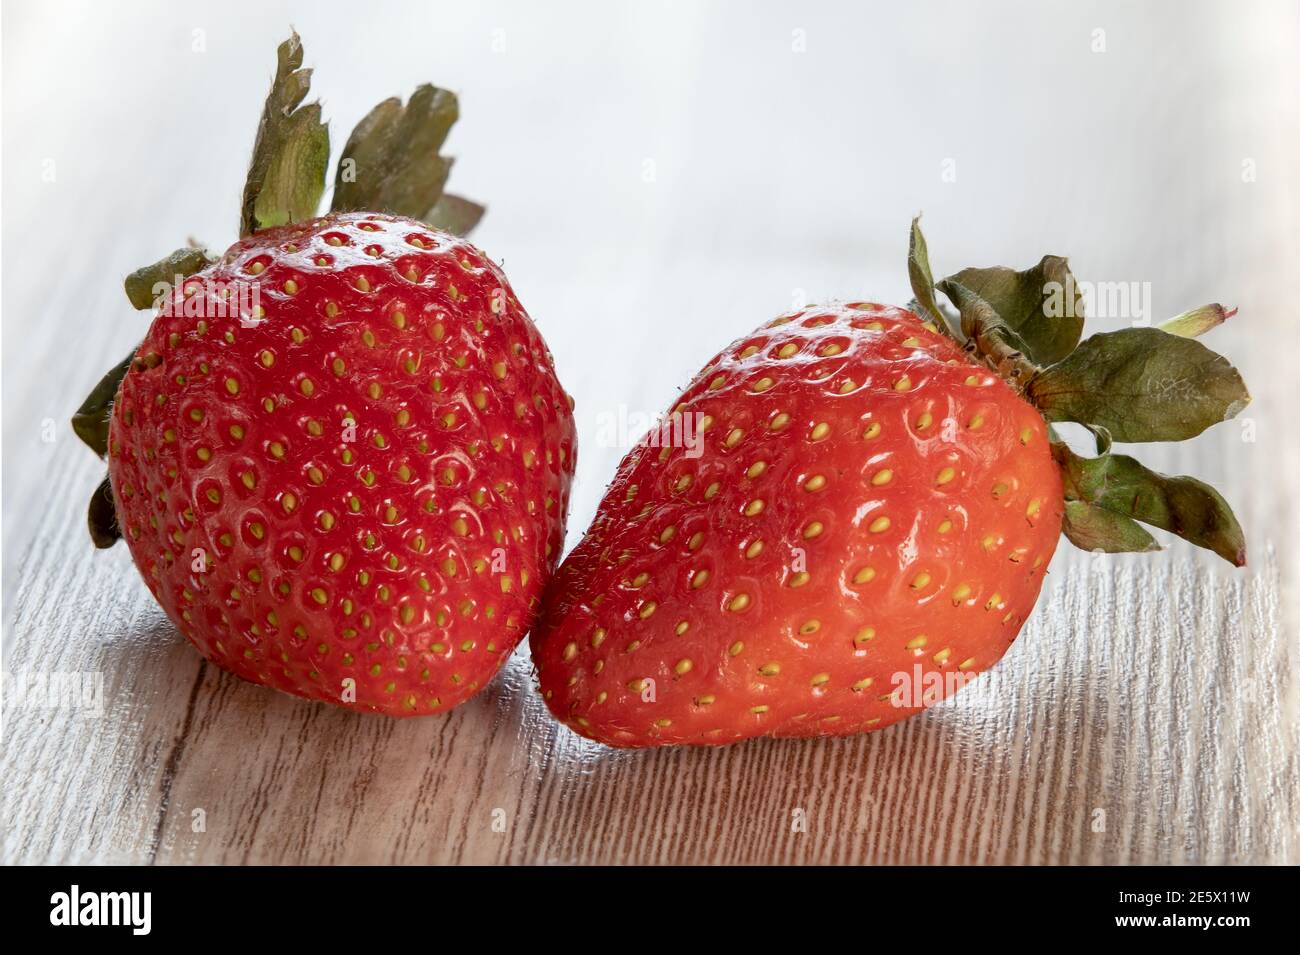 Deux fraises entières avec feuille sur fond en bois. Des fraises fraîches mûres isolées. Concept de nutrition saine alimentation. Superposition de mise au point. Banque D'Images